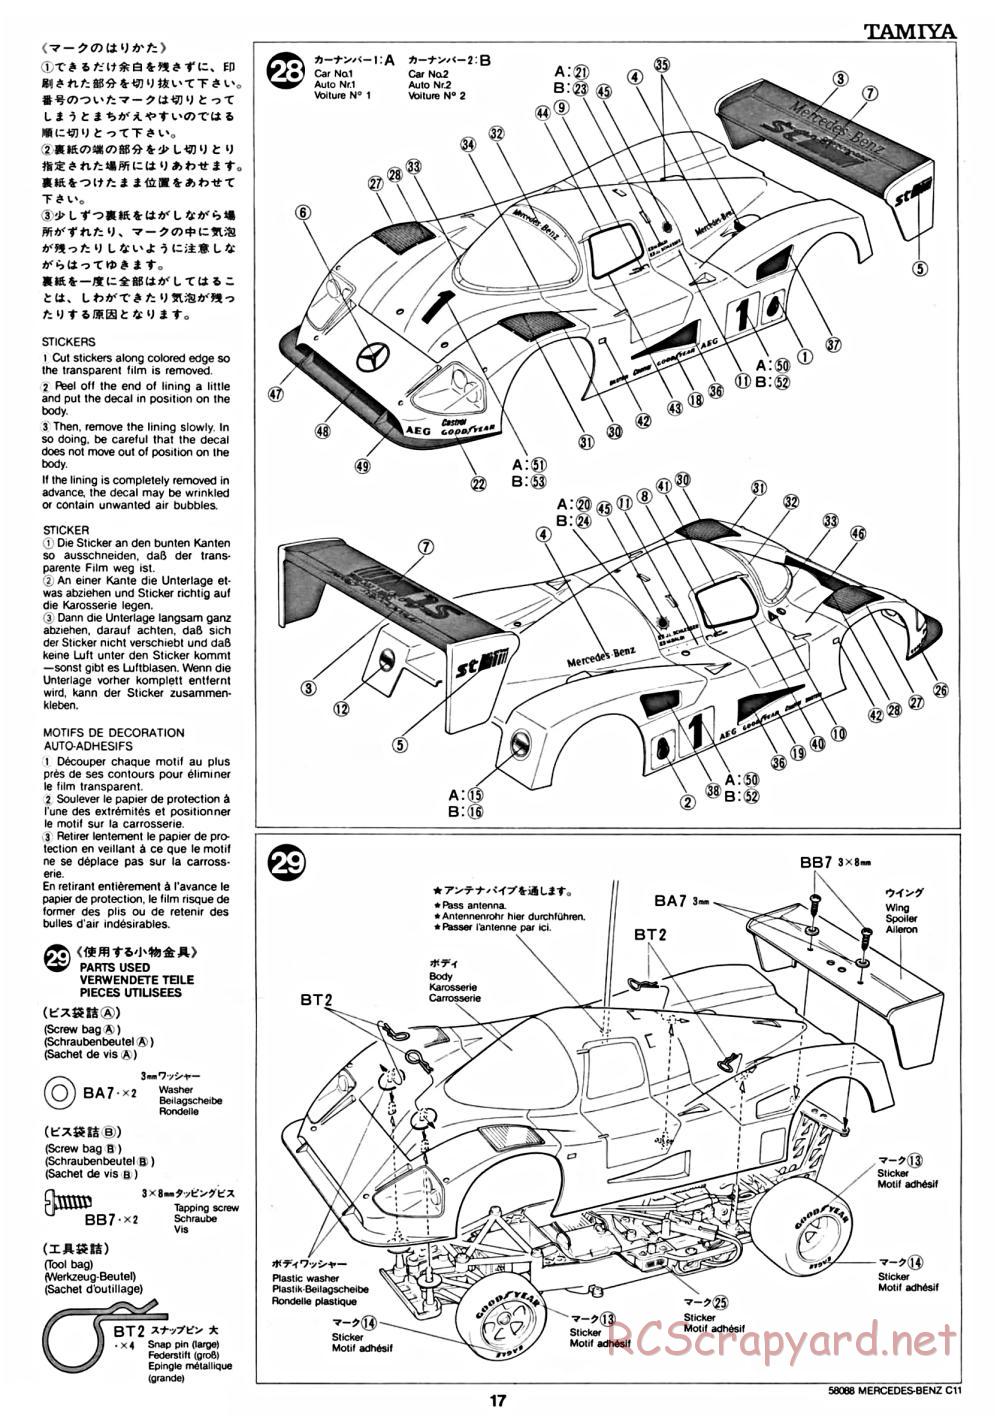 Tamiya - Mercedes Benz C11 - 58088 - Manual - Page 17